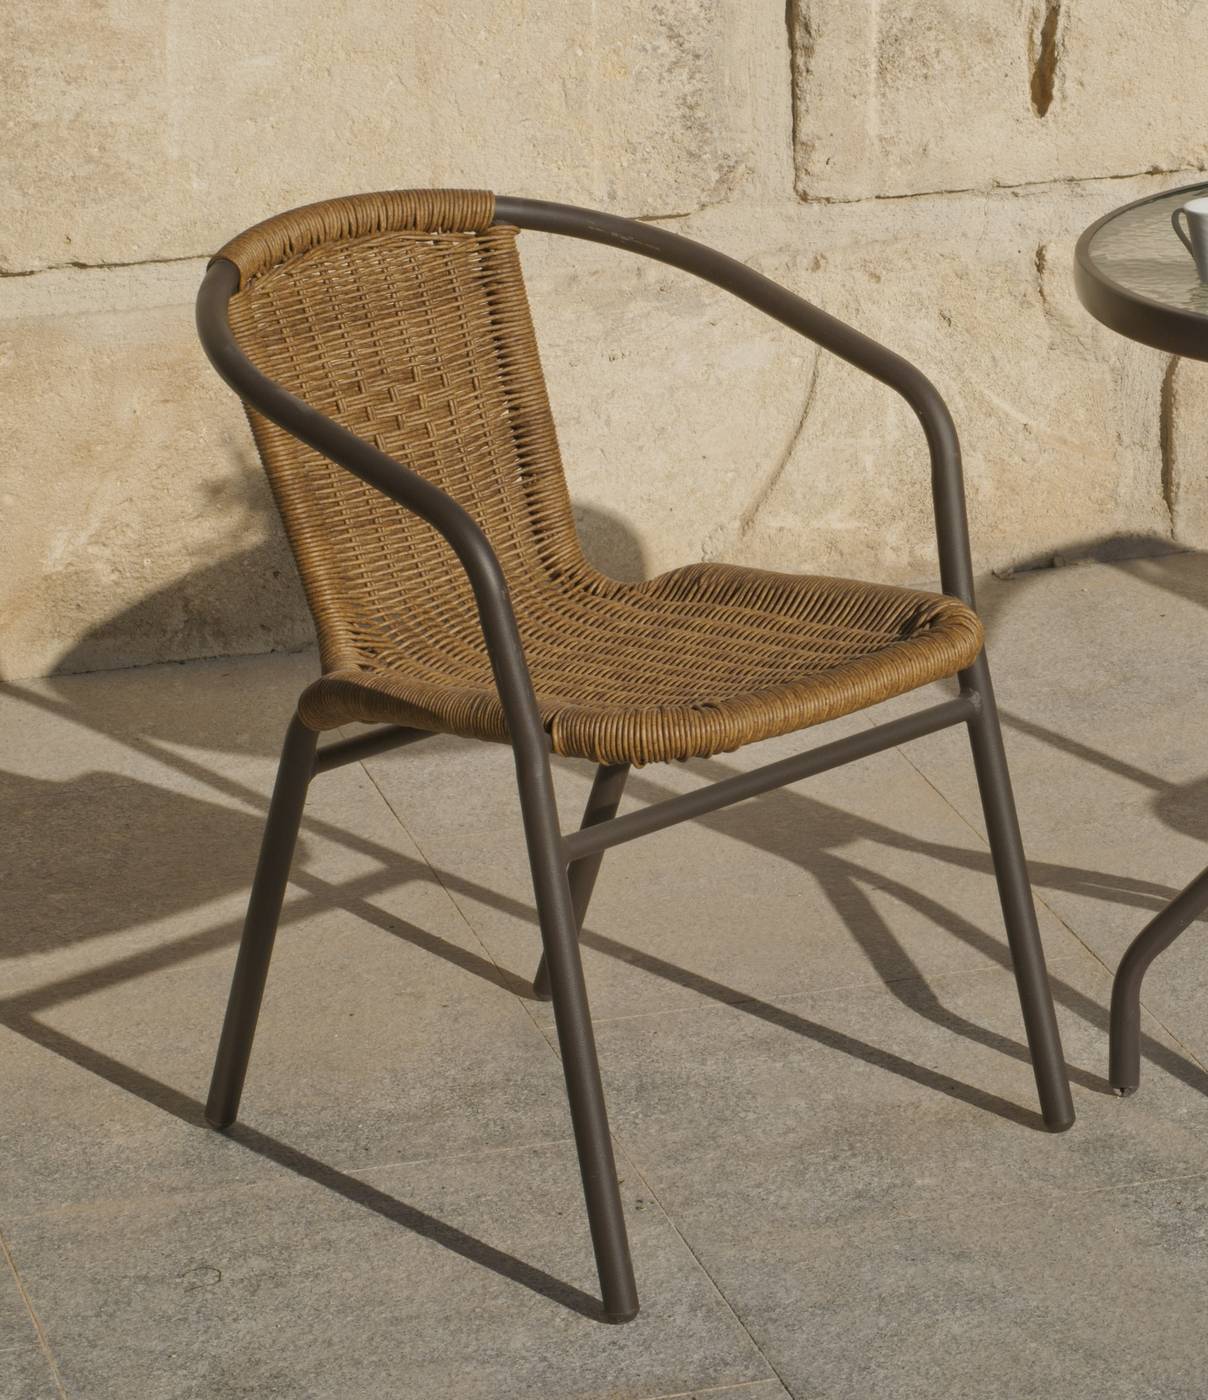 Conjunto Aluminio Oslo-60 - Conjunto para jardín de alumino color bronce: mesa redonda de 60 cm. + 2 sillones de wicker reforzado